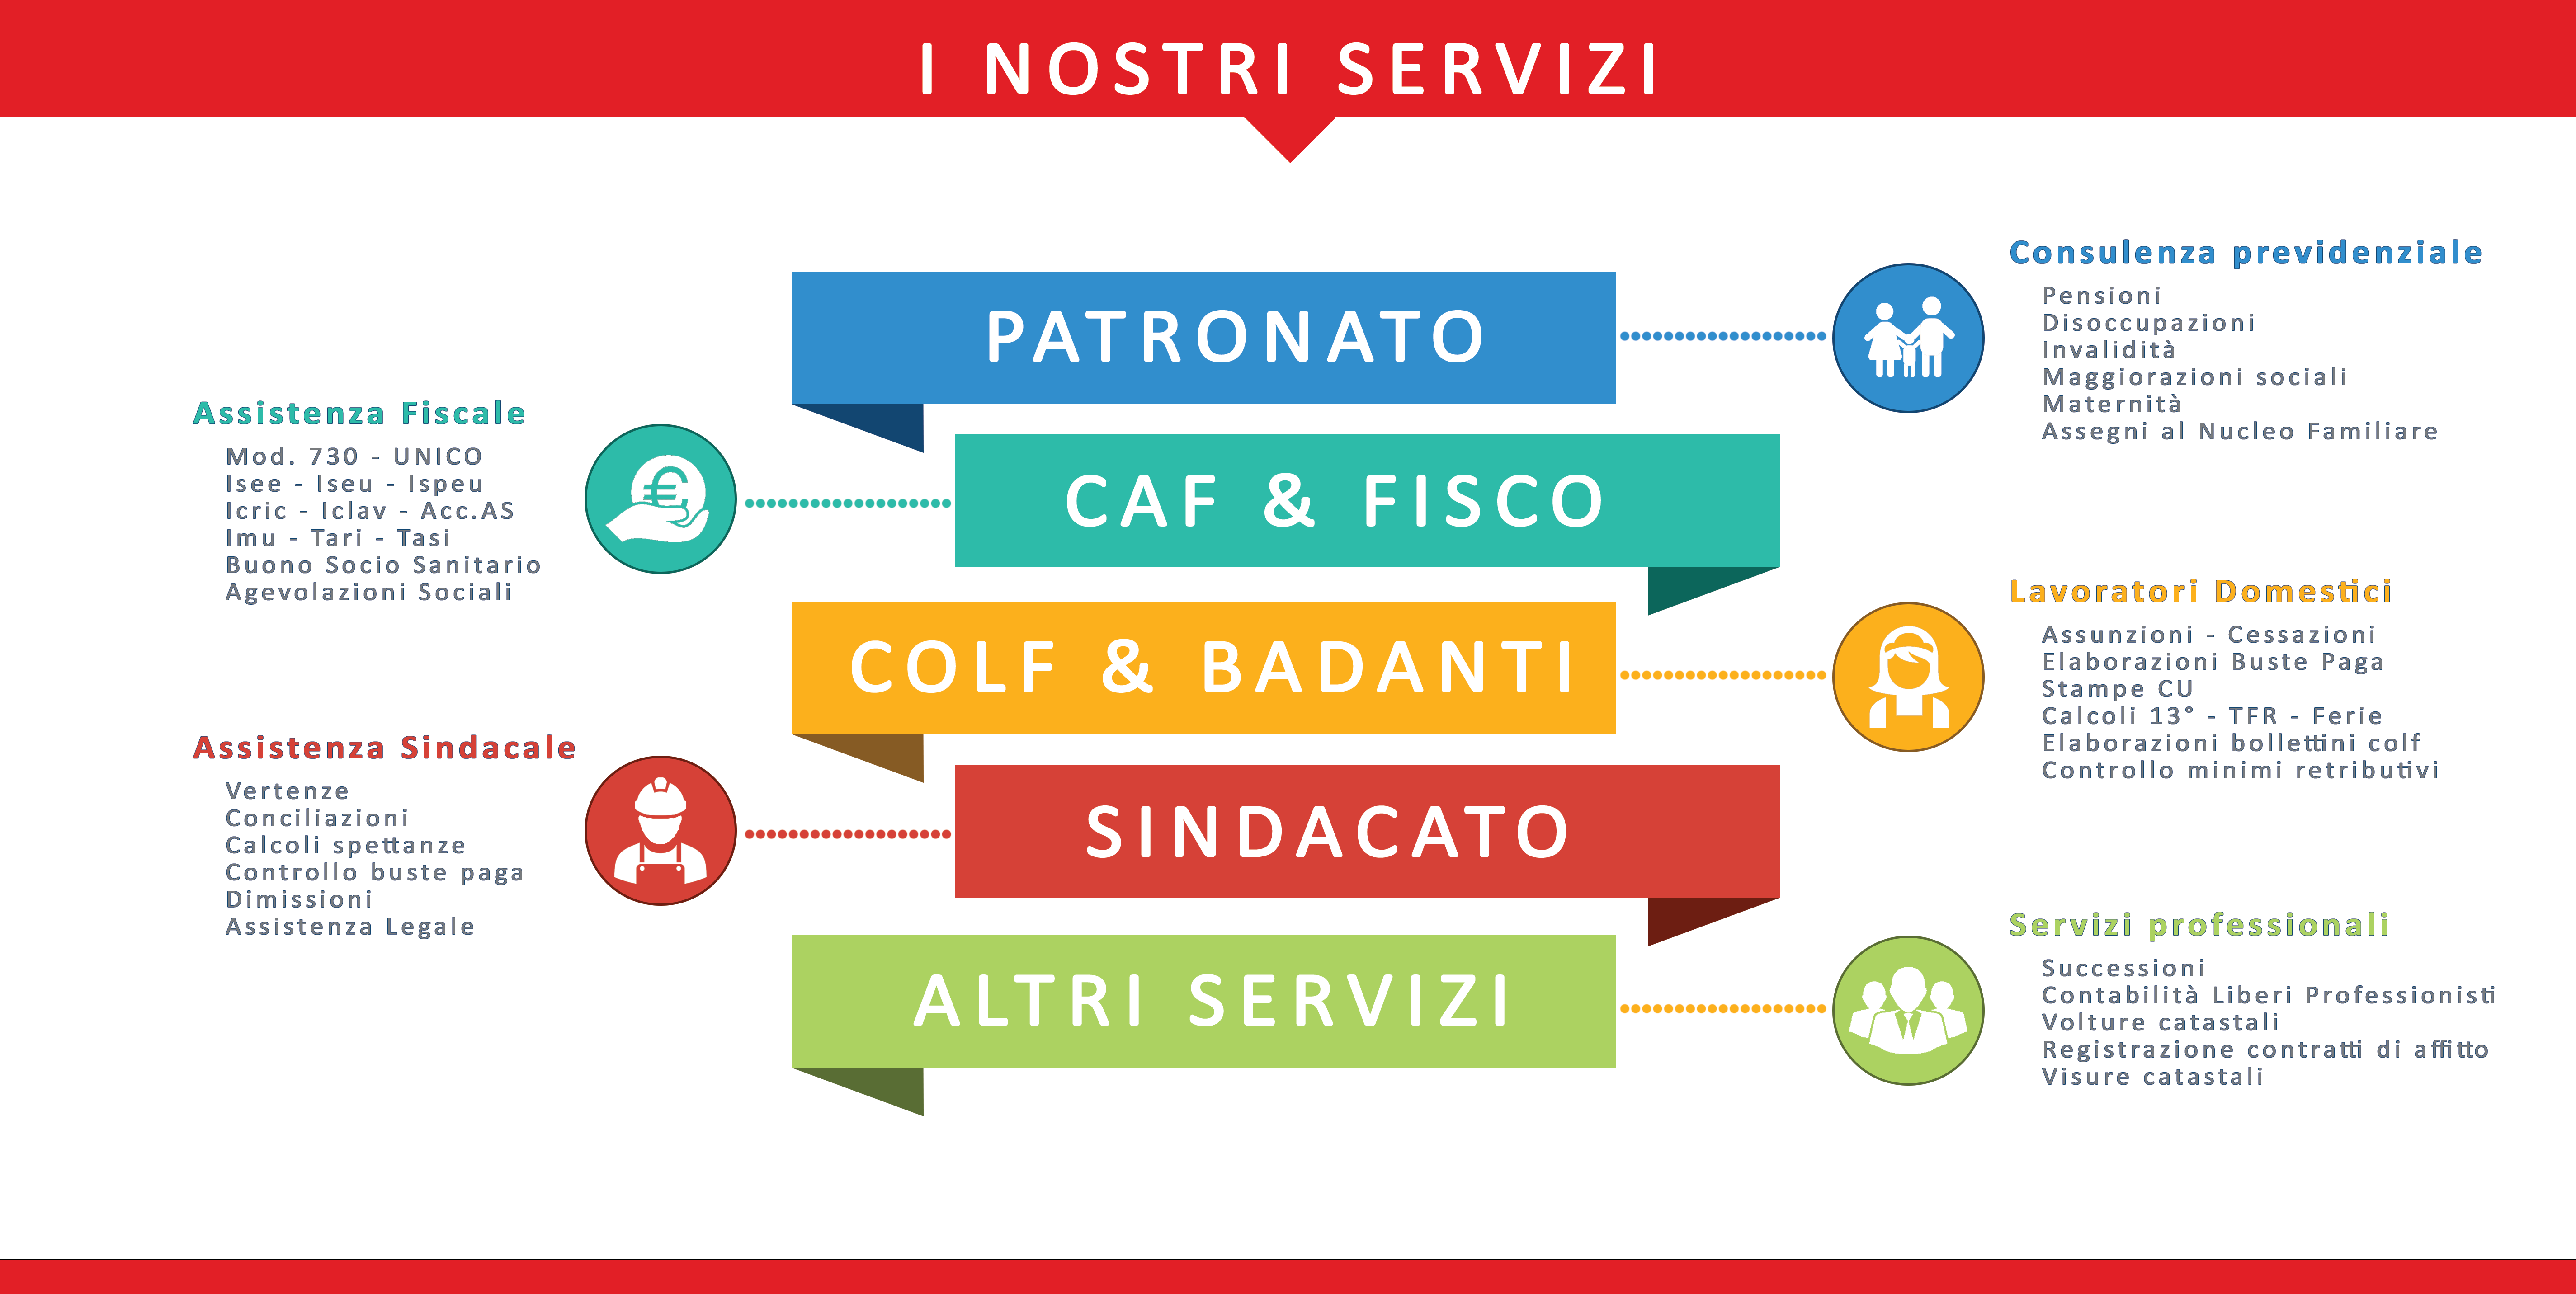 L'elenco di tutti i servizi offerti nelle sedi Confasi Sicilia